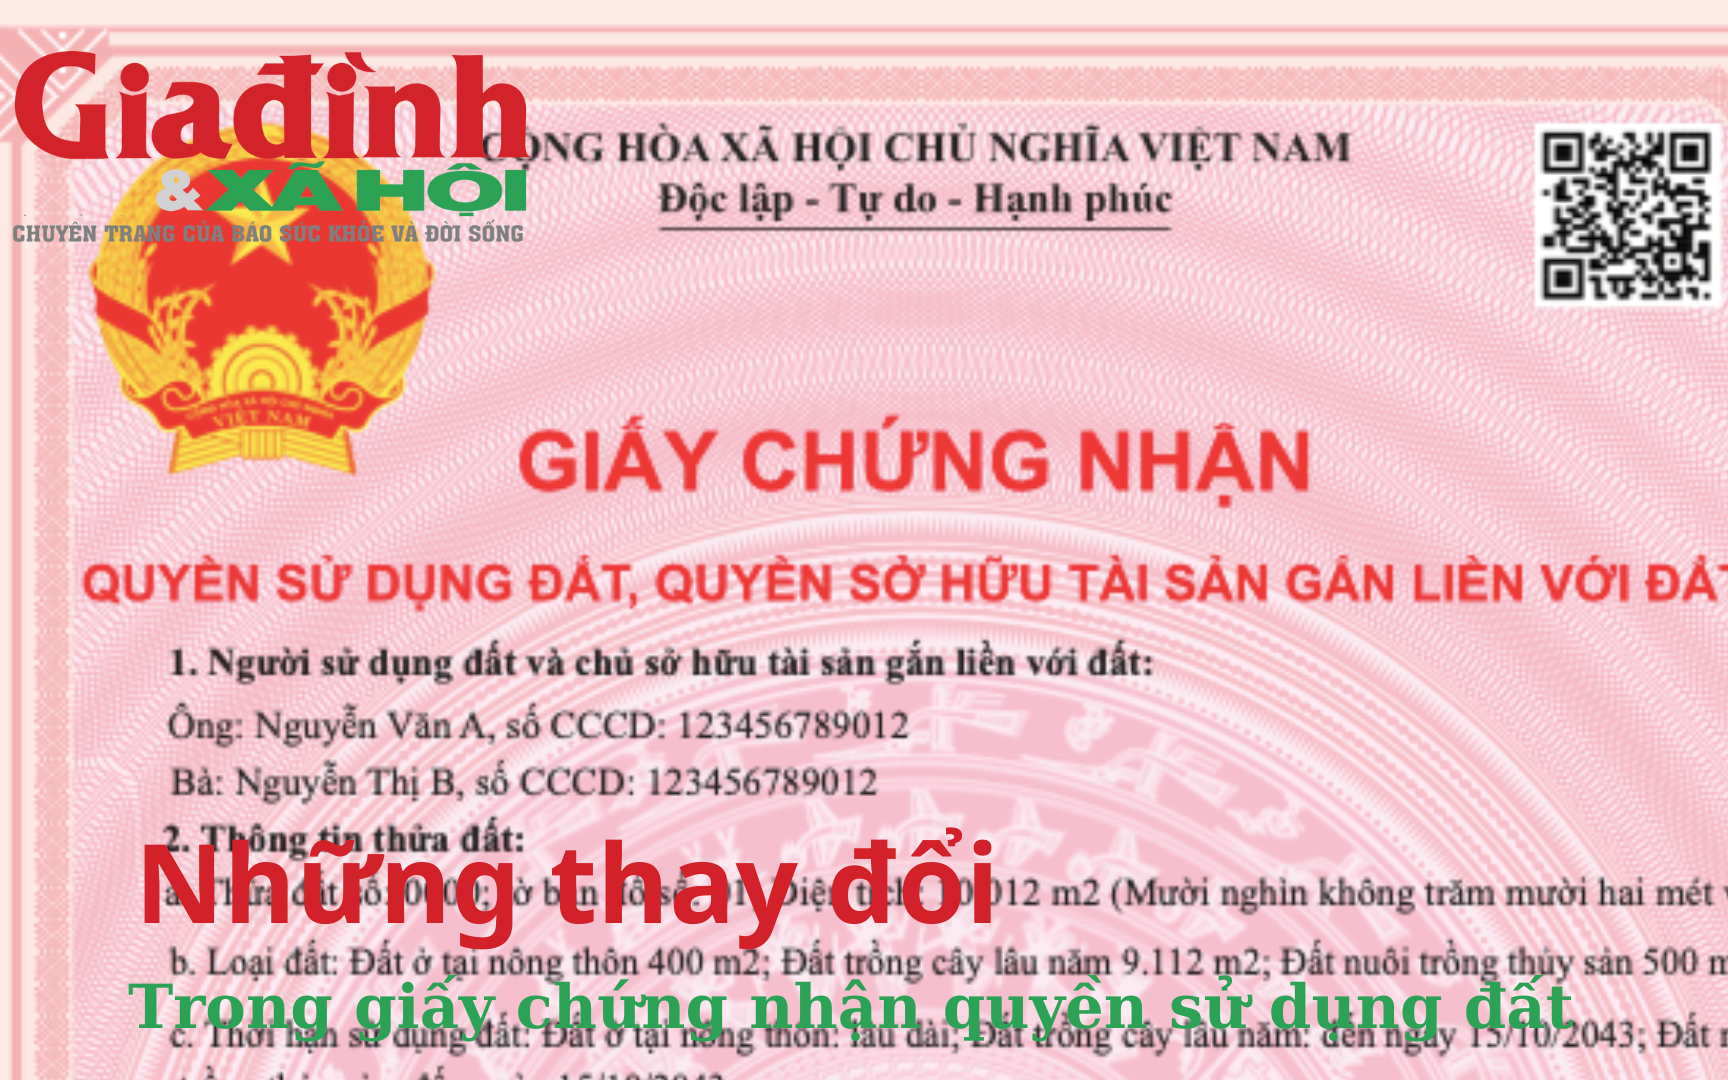 theo-de-xuat-moi-giay-chung-nhan-quyen-su-dung-dat-se-thay-doi-nhu-the-nao-17149756433981286272467-0-48-1080-1776-crop-17149756567651436295467.png